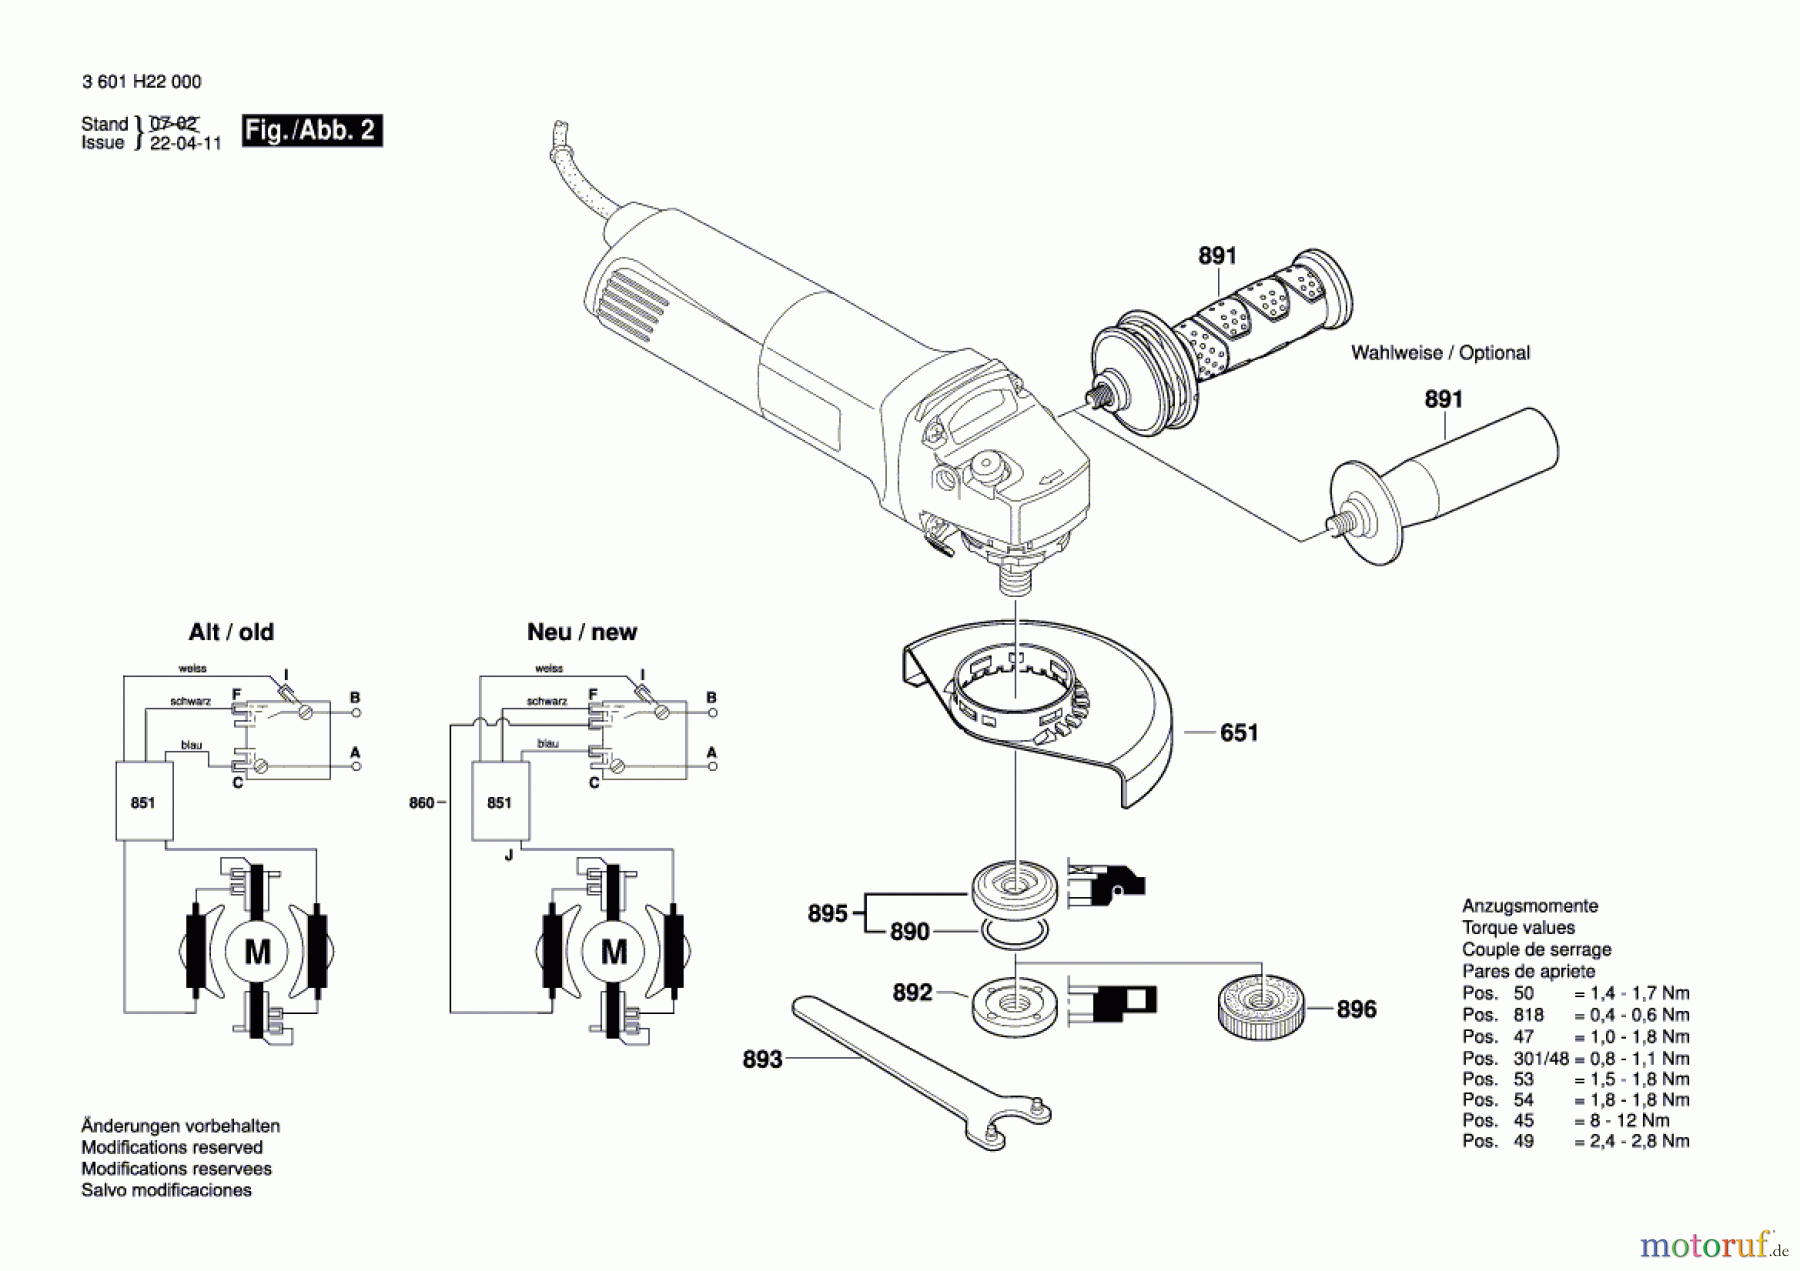  Bosch Werkzeug Winkelschleifer GWS 11-125 CIE Seite 2